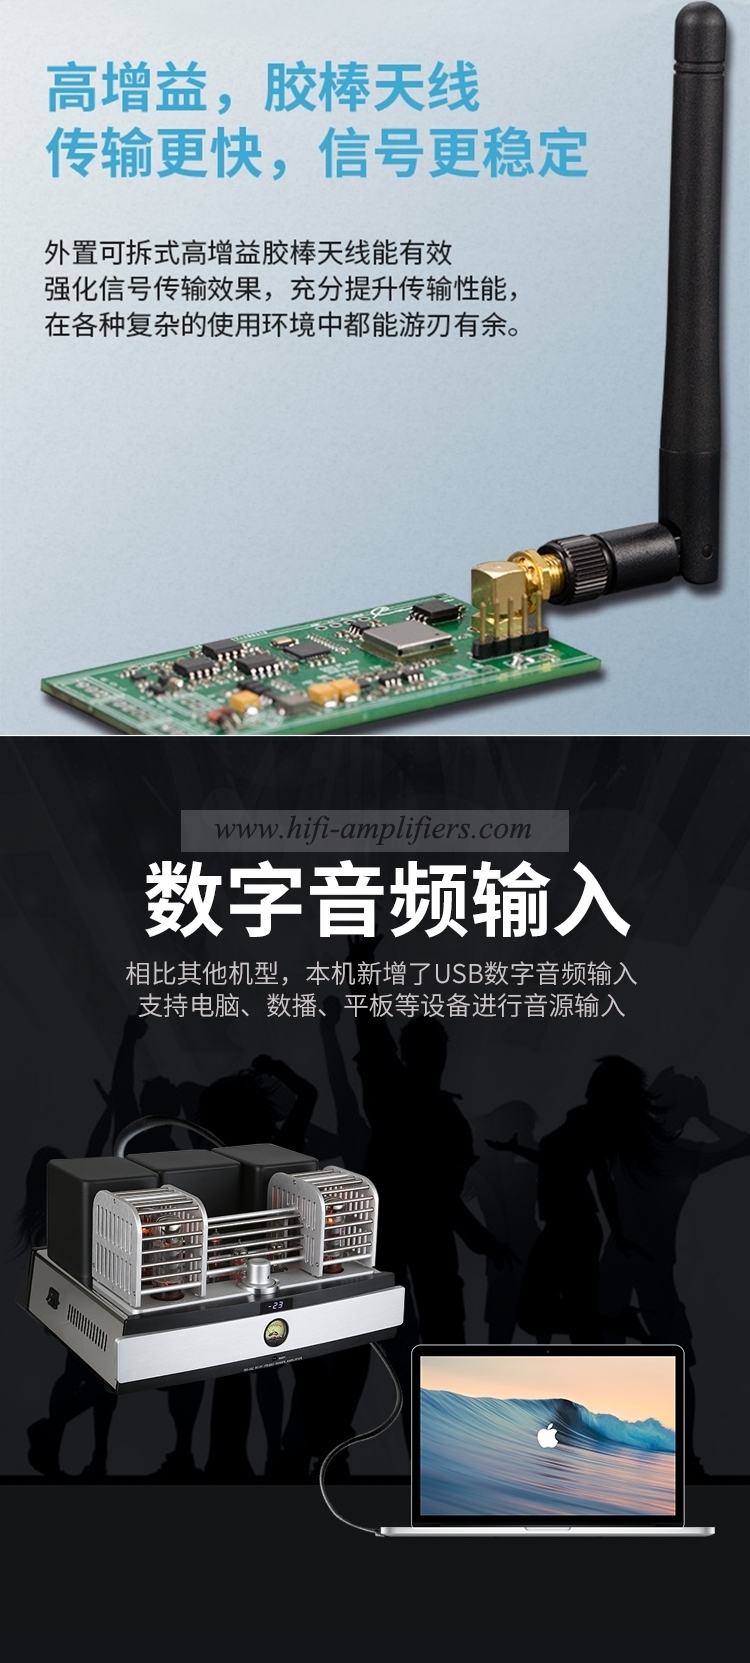 AMPLIFICADOR DE TUBO Digital USB YAQIN MS-20L, amplificador de tubo EL34, amplificador de Audio de tubo electrónico Bluetooth, amplificador de tubo HIFI CSR8675 de EE. UU.